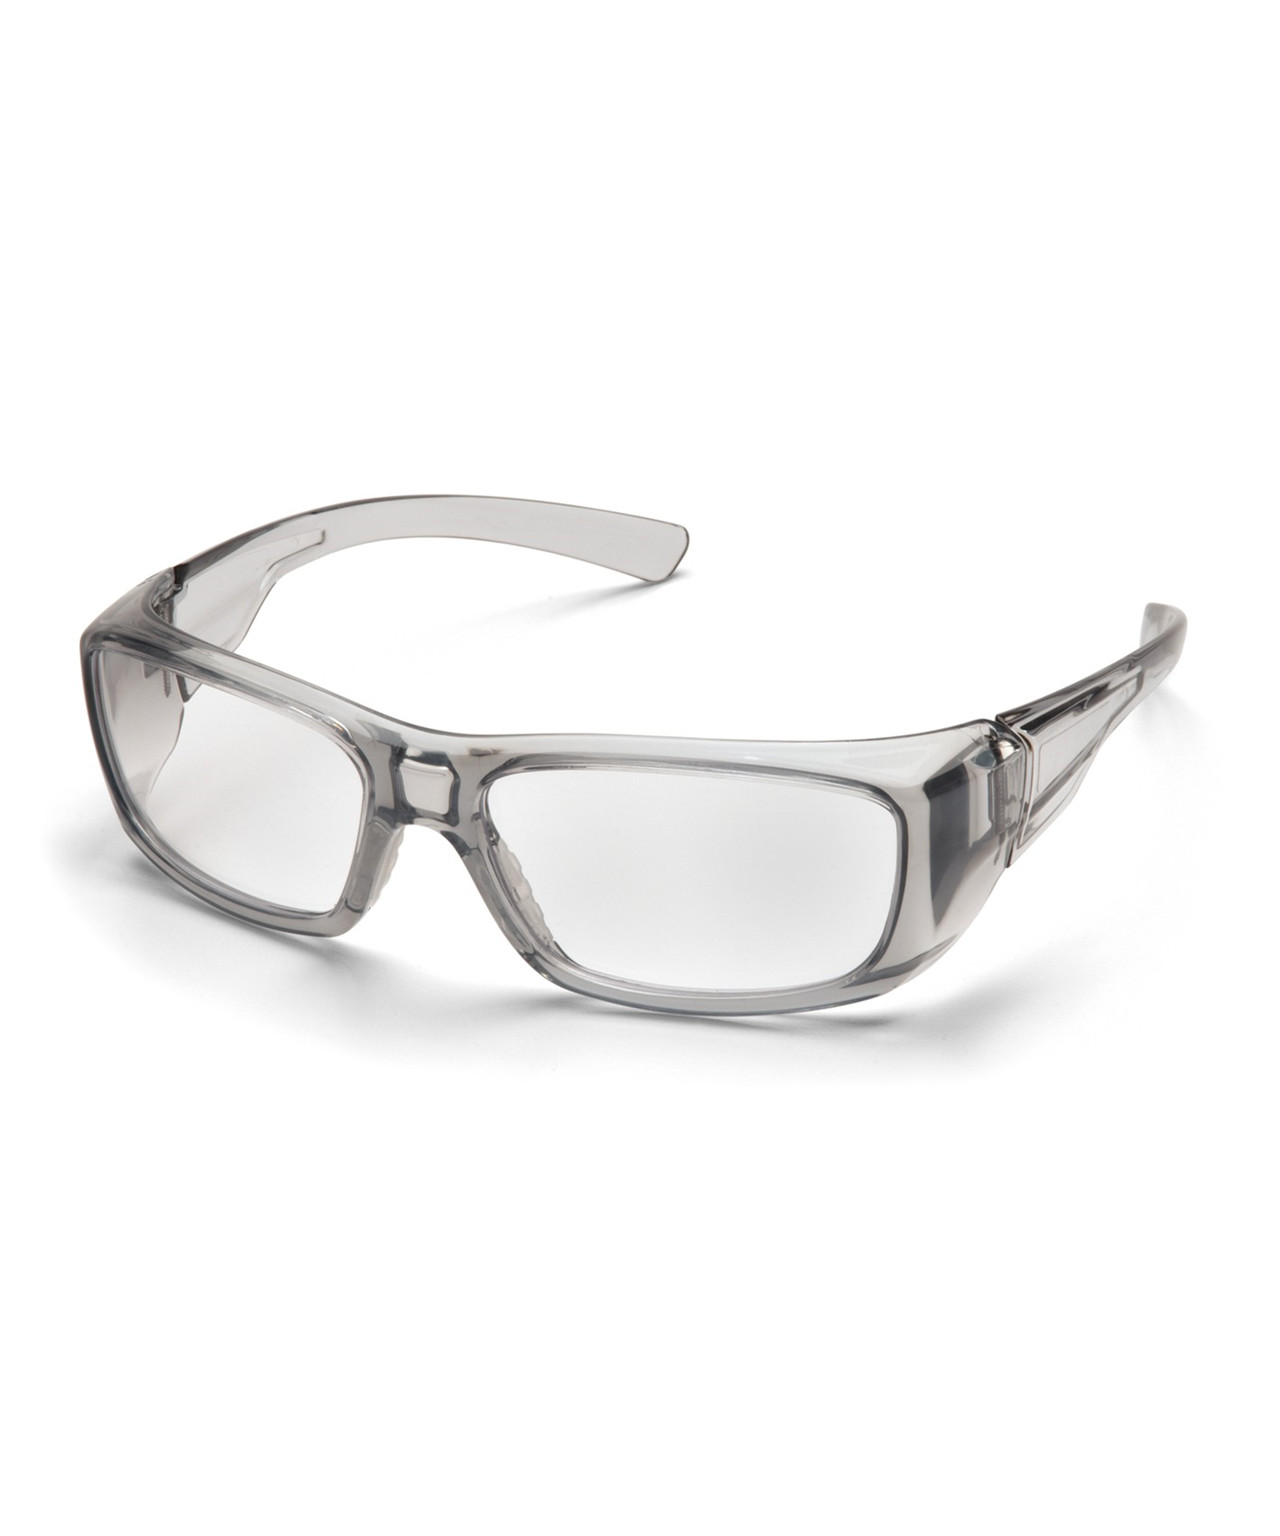 Se Pyramex Emerge sikkerhedsbrille m/styrke +1,5 hos Specialbutikken